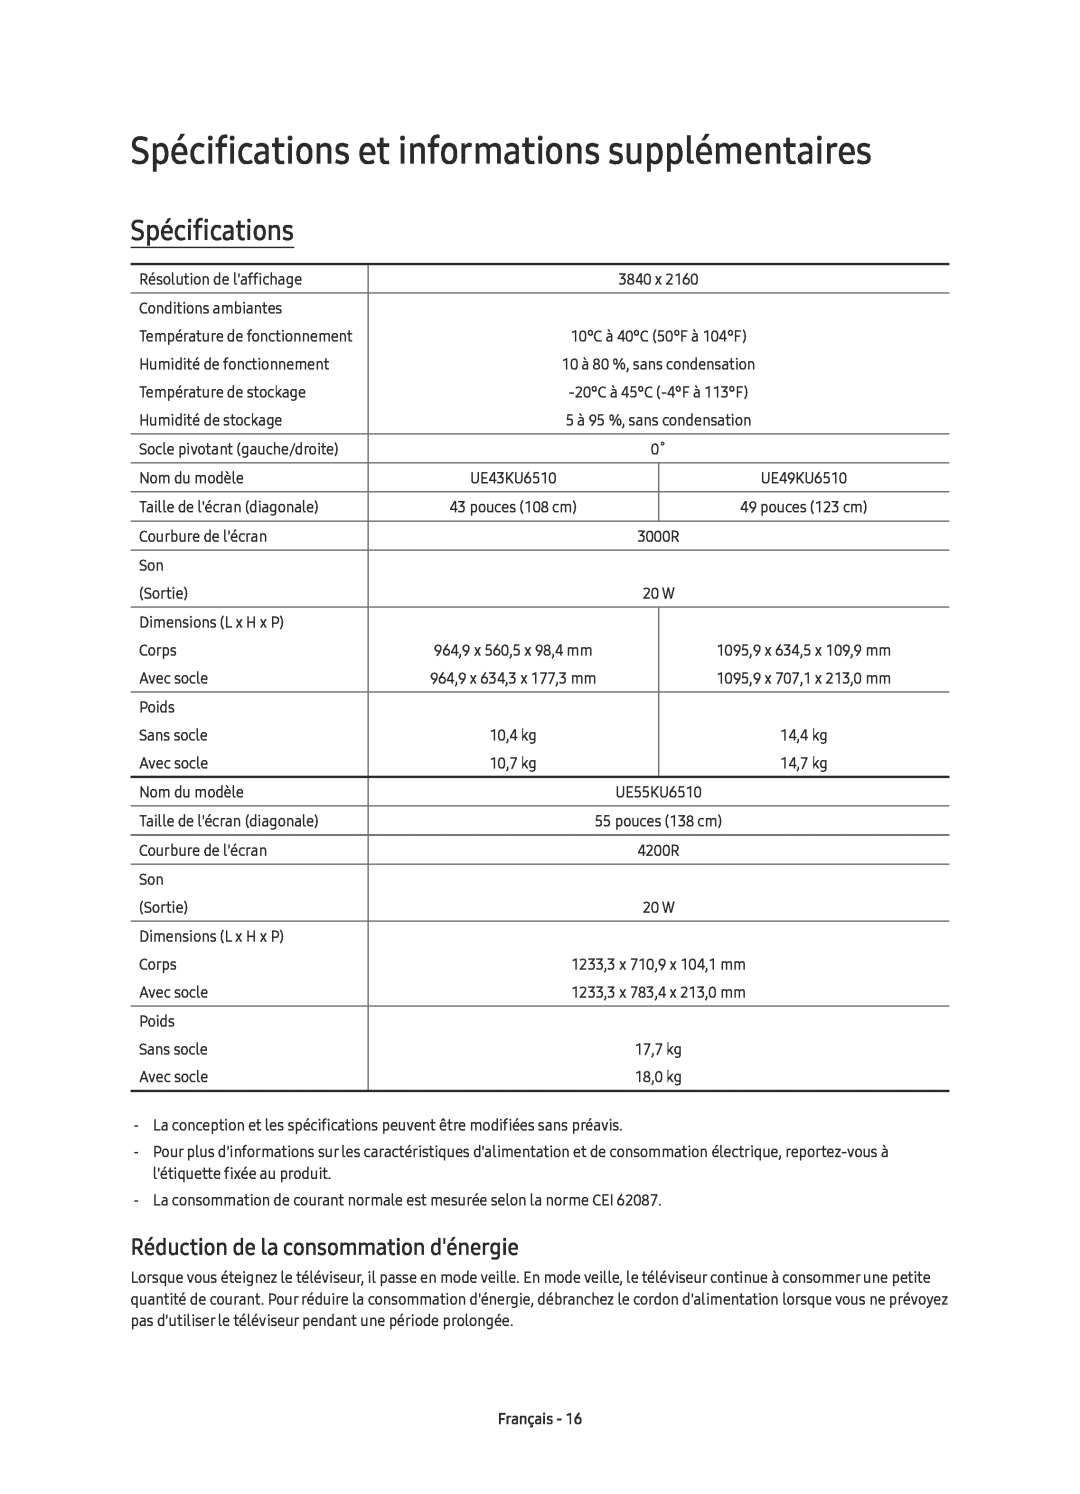 Samsung UE49KU6510UXZF Spécifications et informations supplémentaires, Réduction de la consommation dénergie, Français 